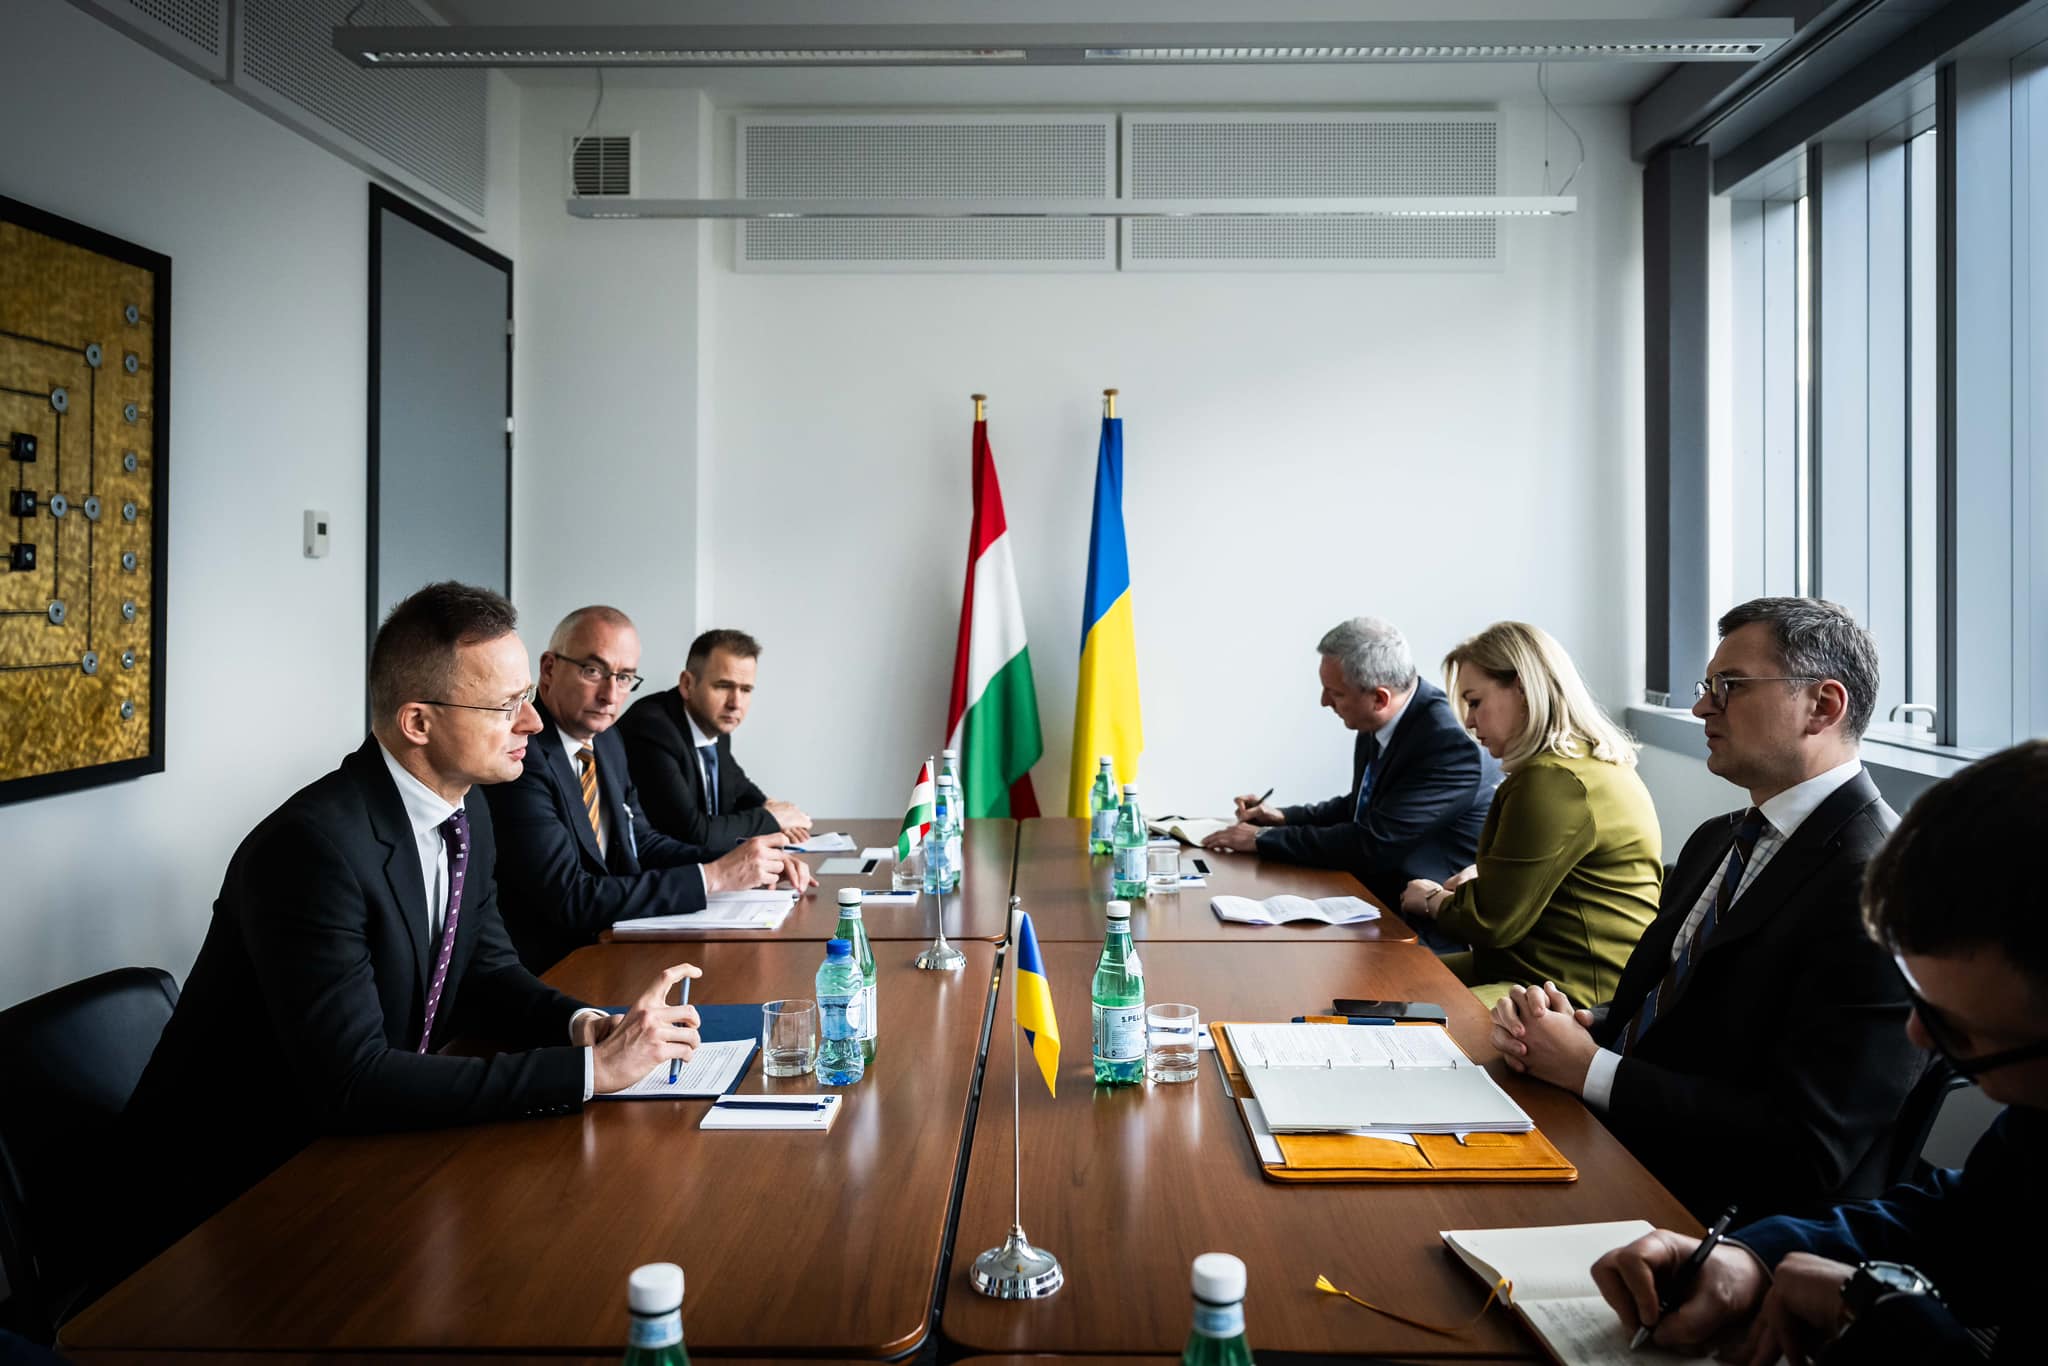 हंगरी सरकार यूक्रेन के साथ विश्वास का पुनर्निर्माण कर रही है